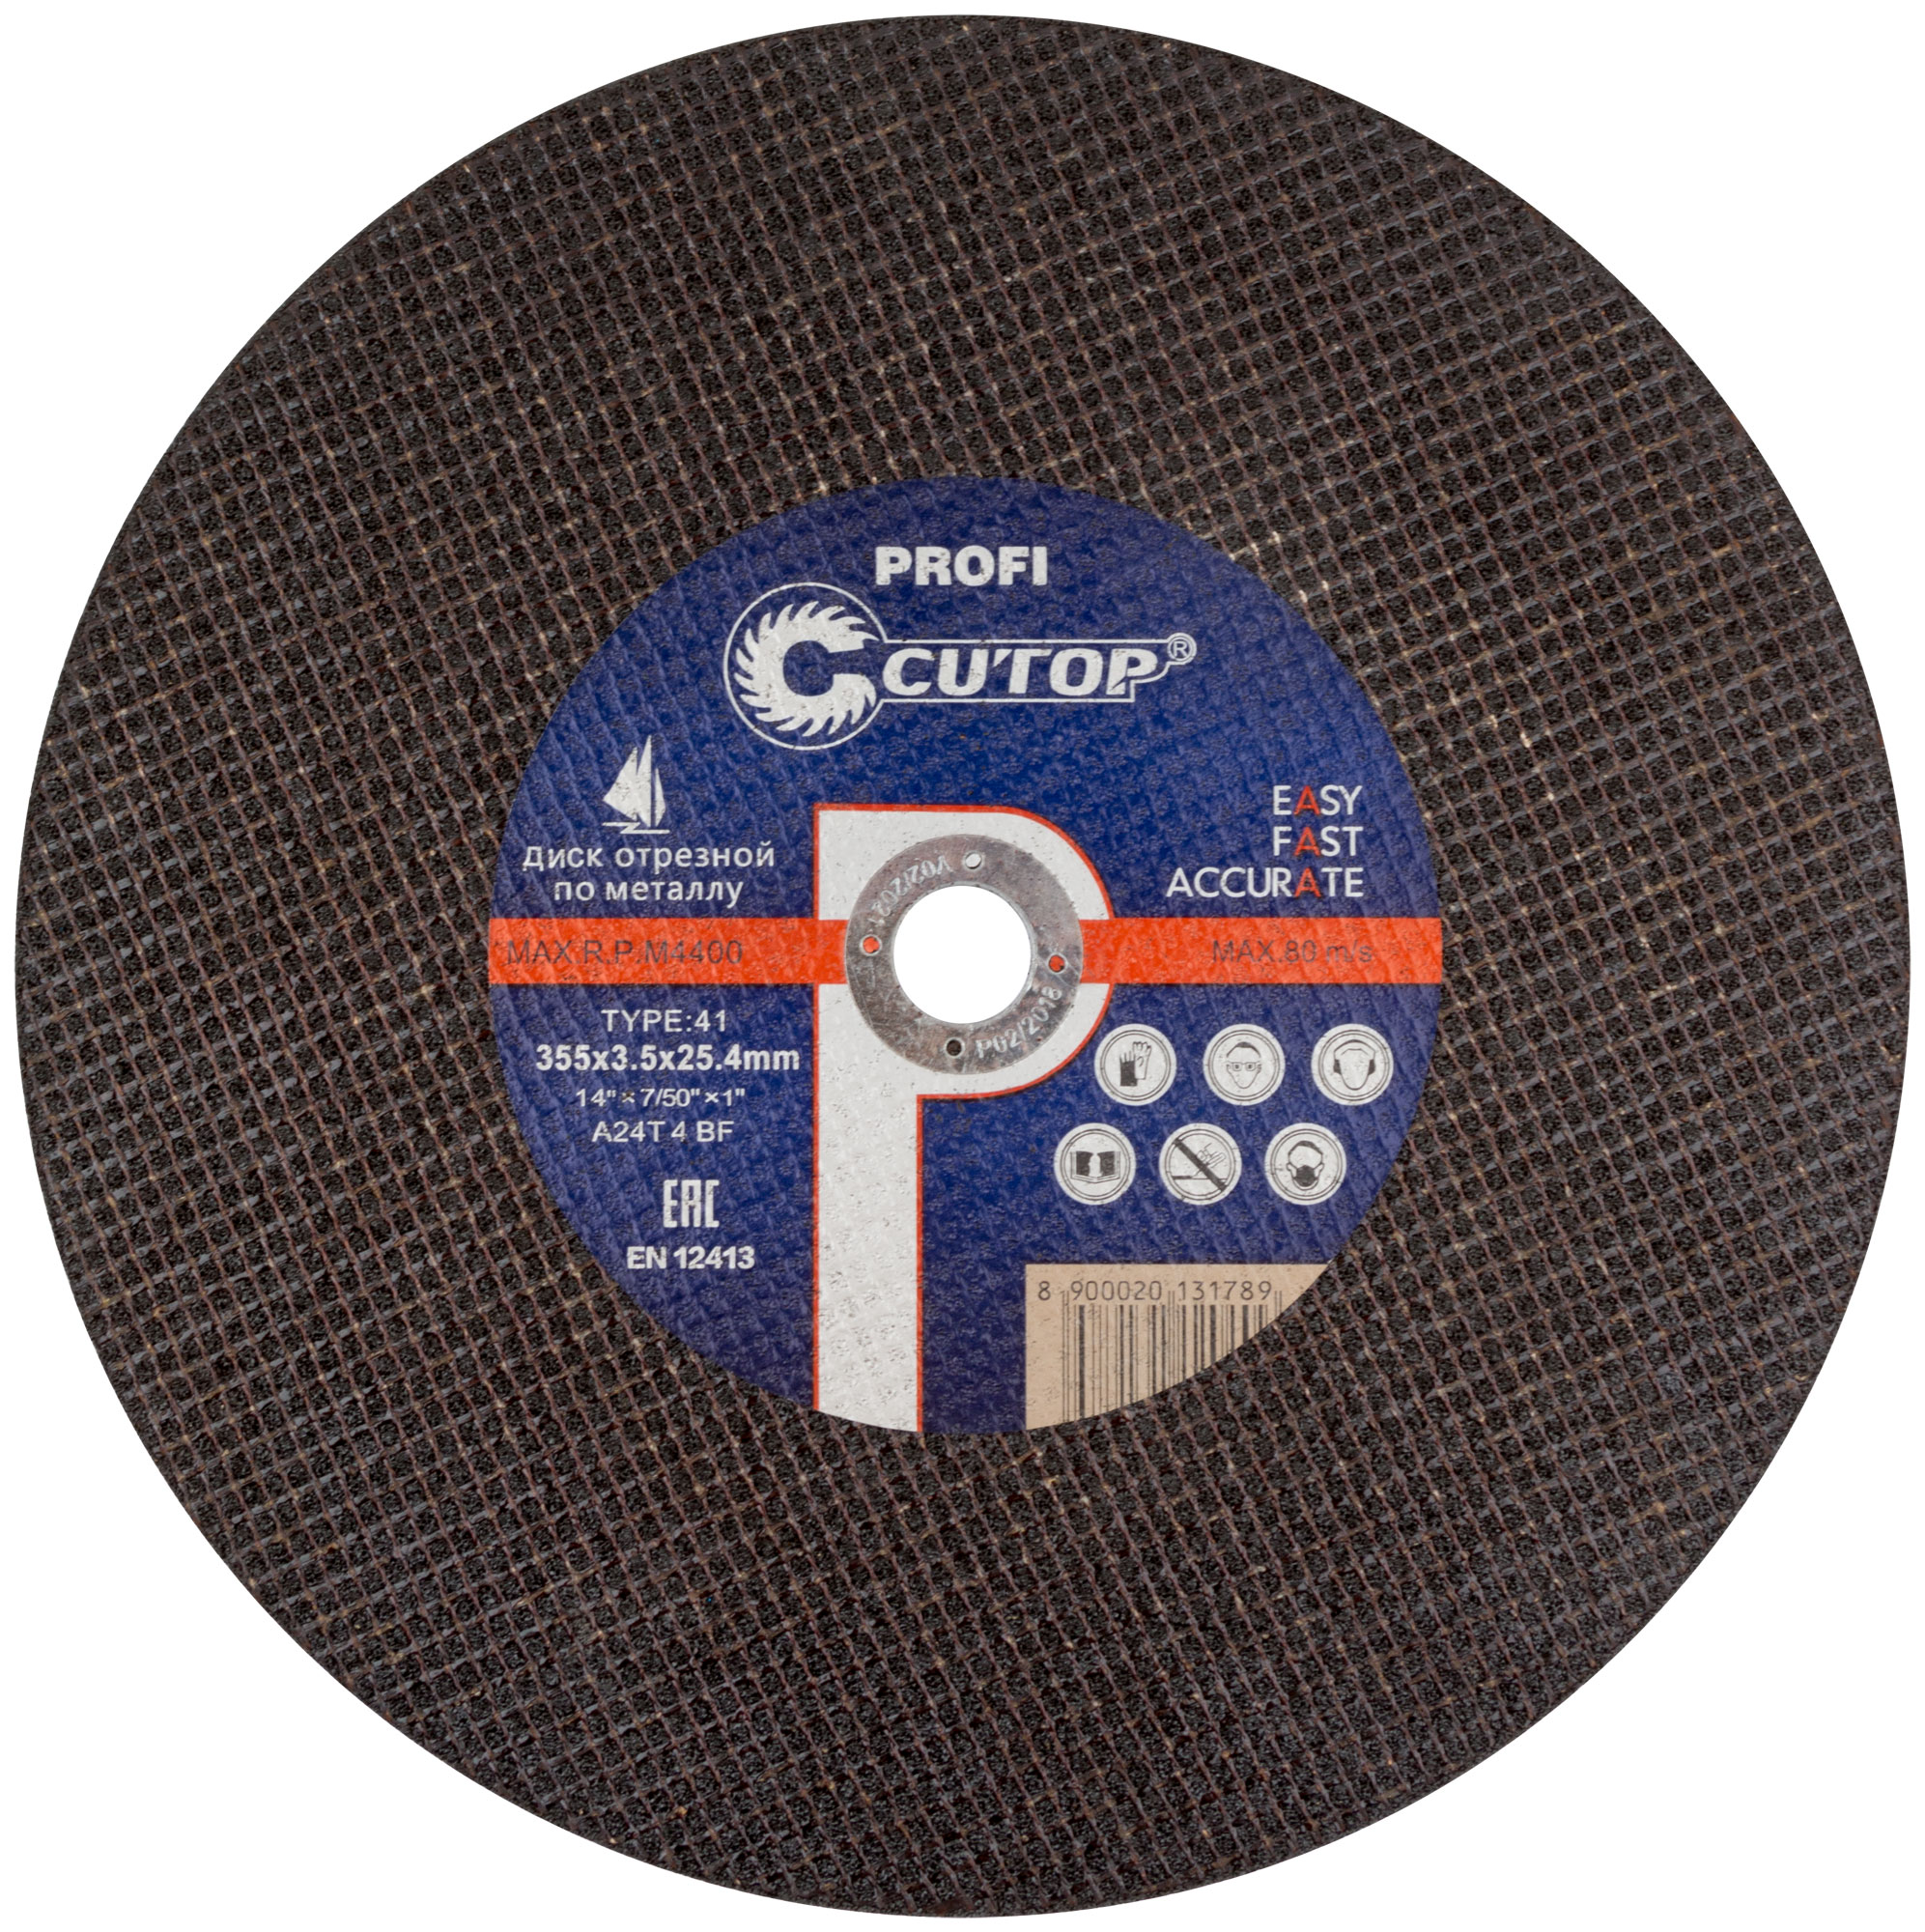 Профессиональный диск отрезной по металлу Т41-355 х 3,5 х 25,4 мм, Cutop Profi